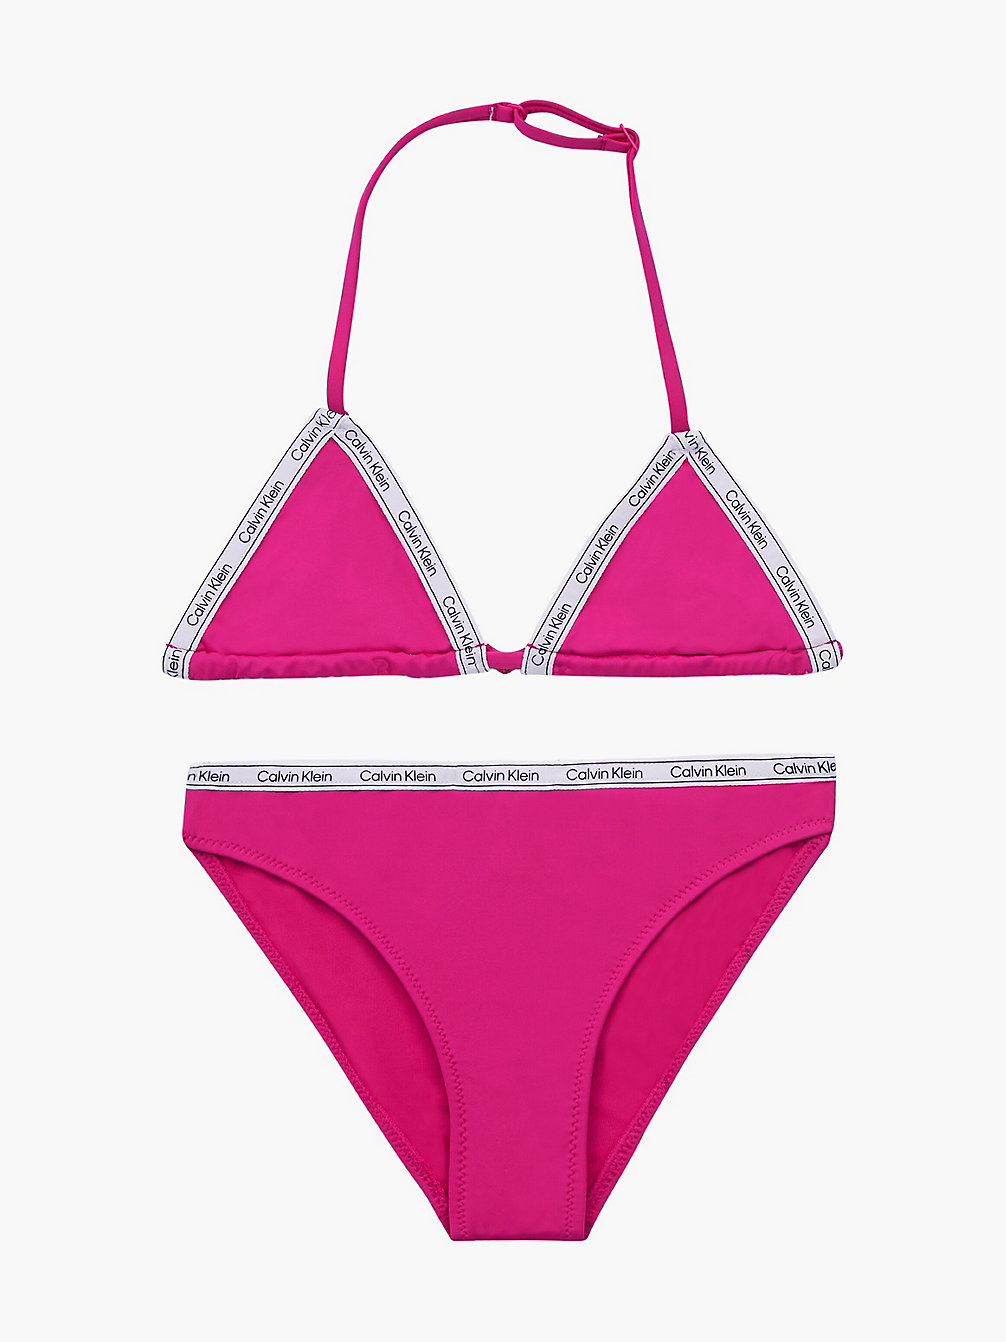 ROYAL PINK Bikini-Set Mit Triangel-Top Für Mädchen - Logo Tape undefined Maedchen Calvin Klein